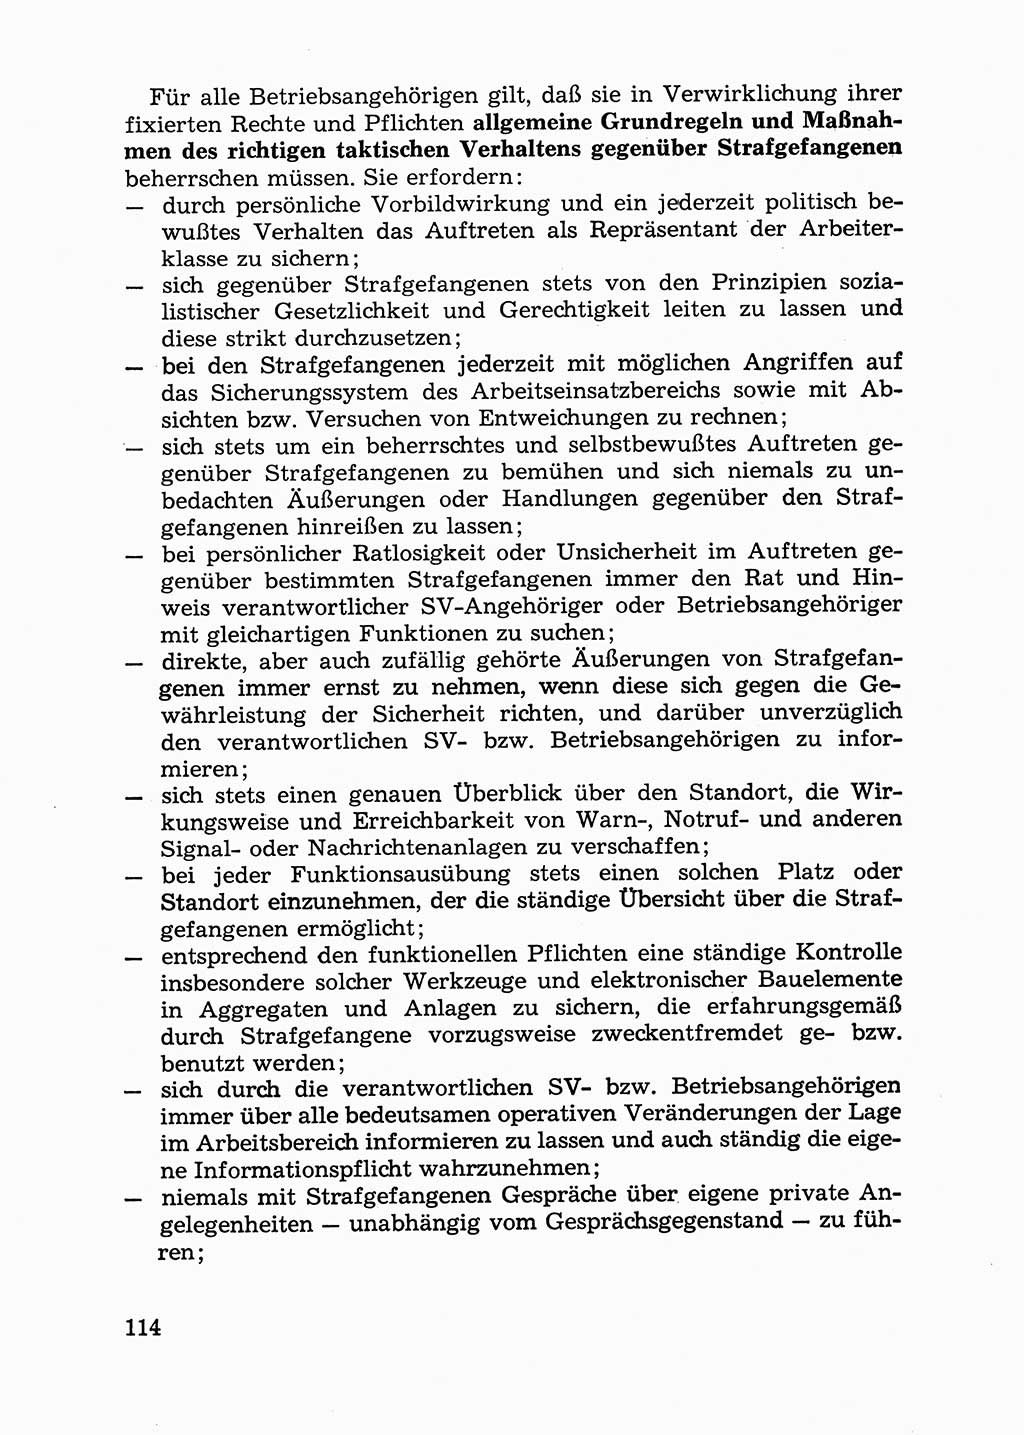 Handbuch für Betriebsangehörige, Abteilung Strafvollzug (SV) [Ministerium des Innern (MdI) Deutsche Demokratische Republik (DDR)] 1981, Seite 114 (Hb. BA Abt. SV MdI DDR 1981, S. 114)